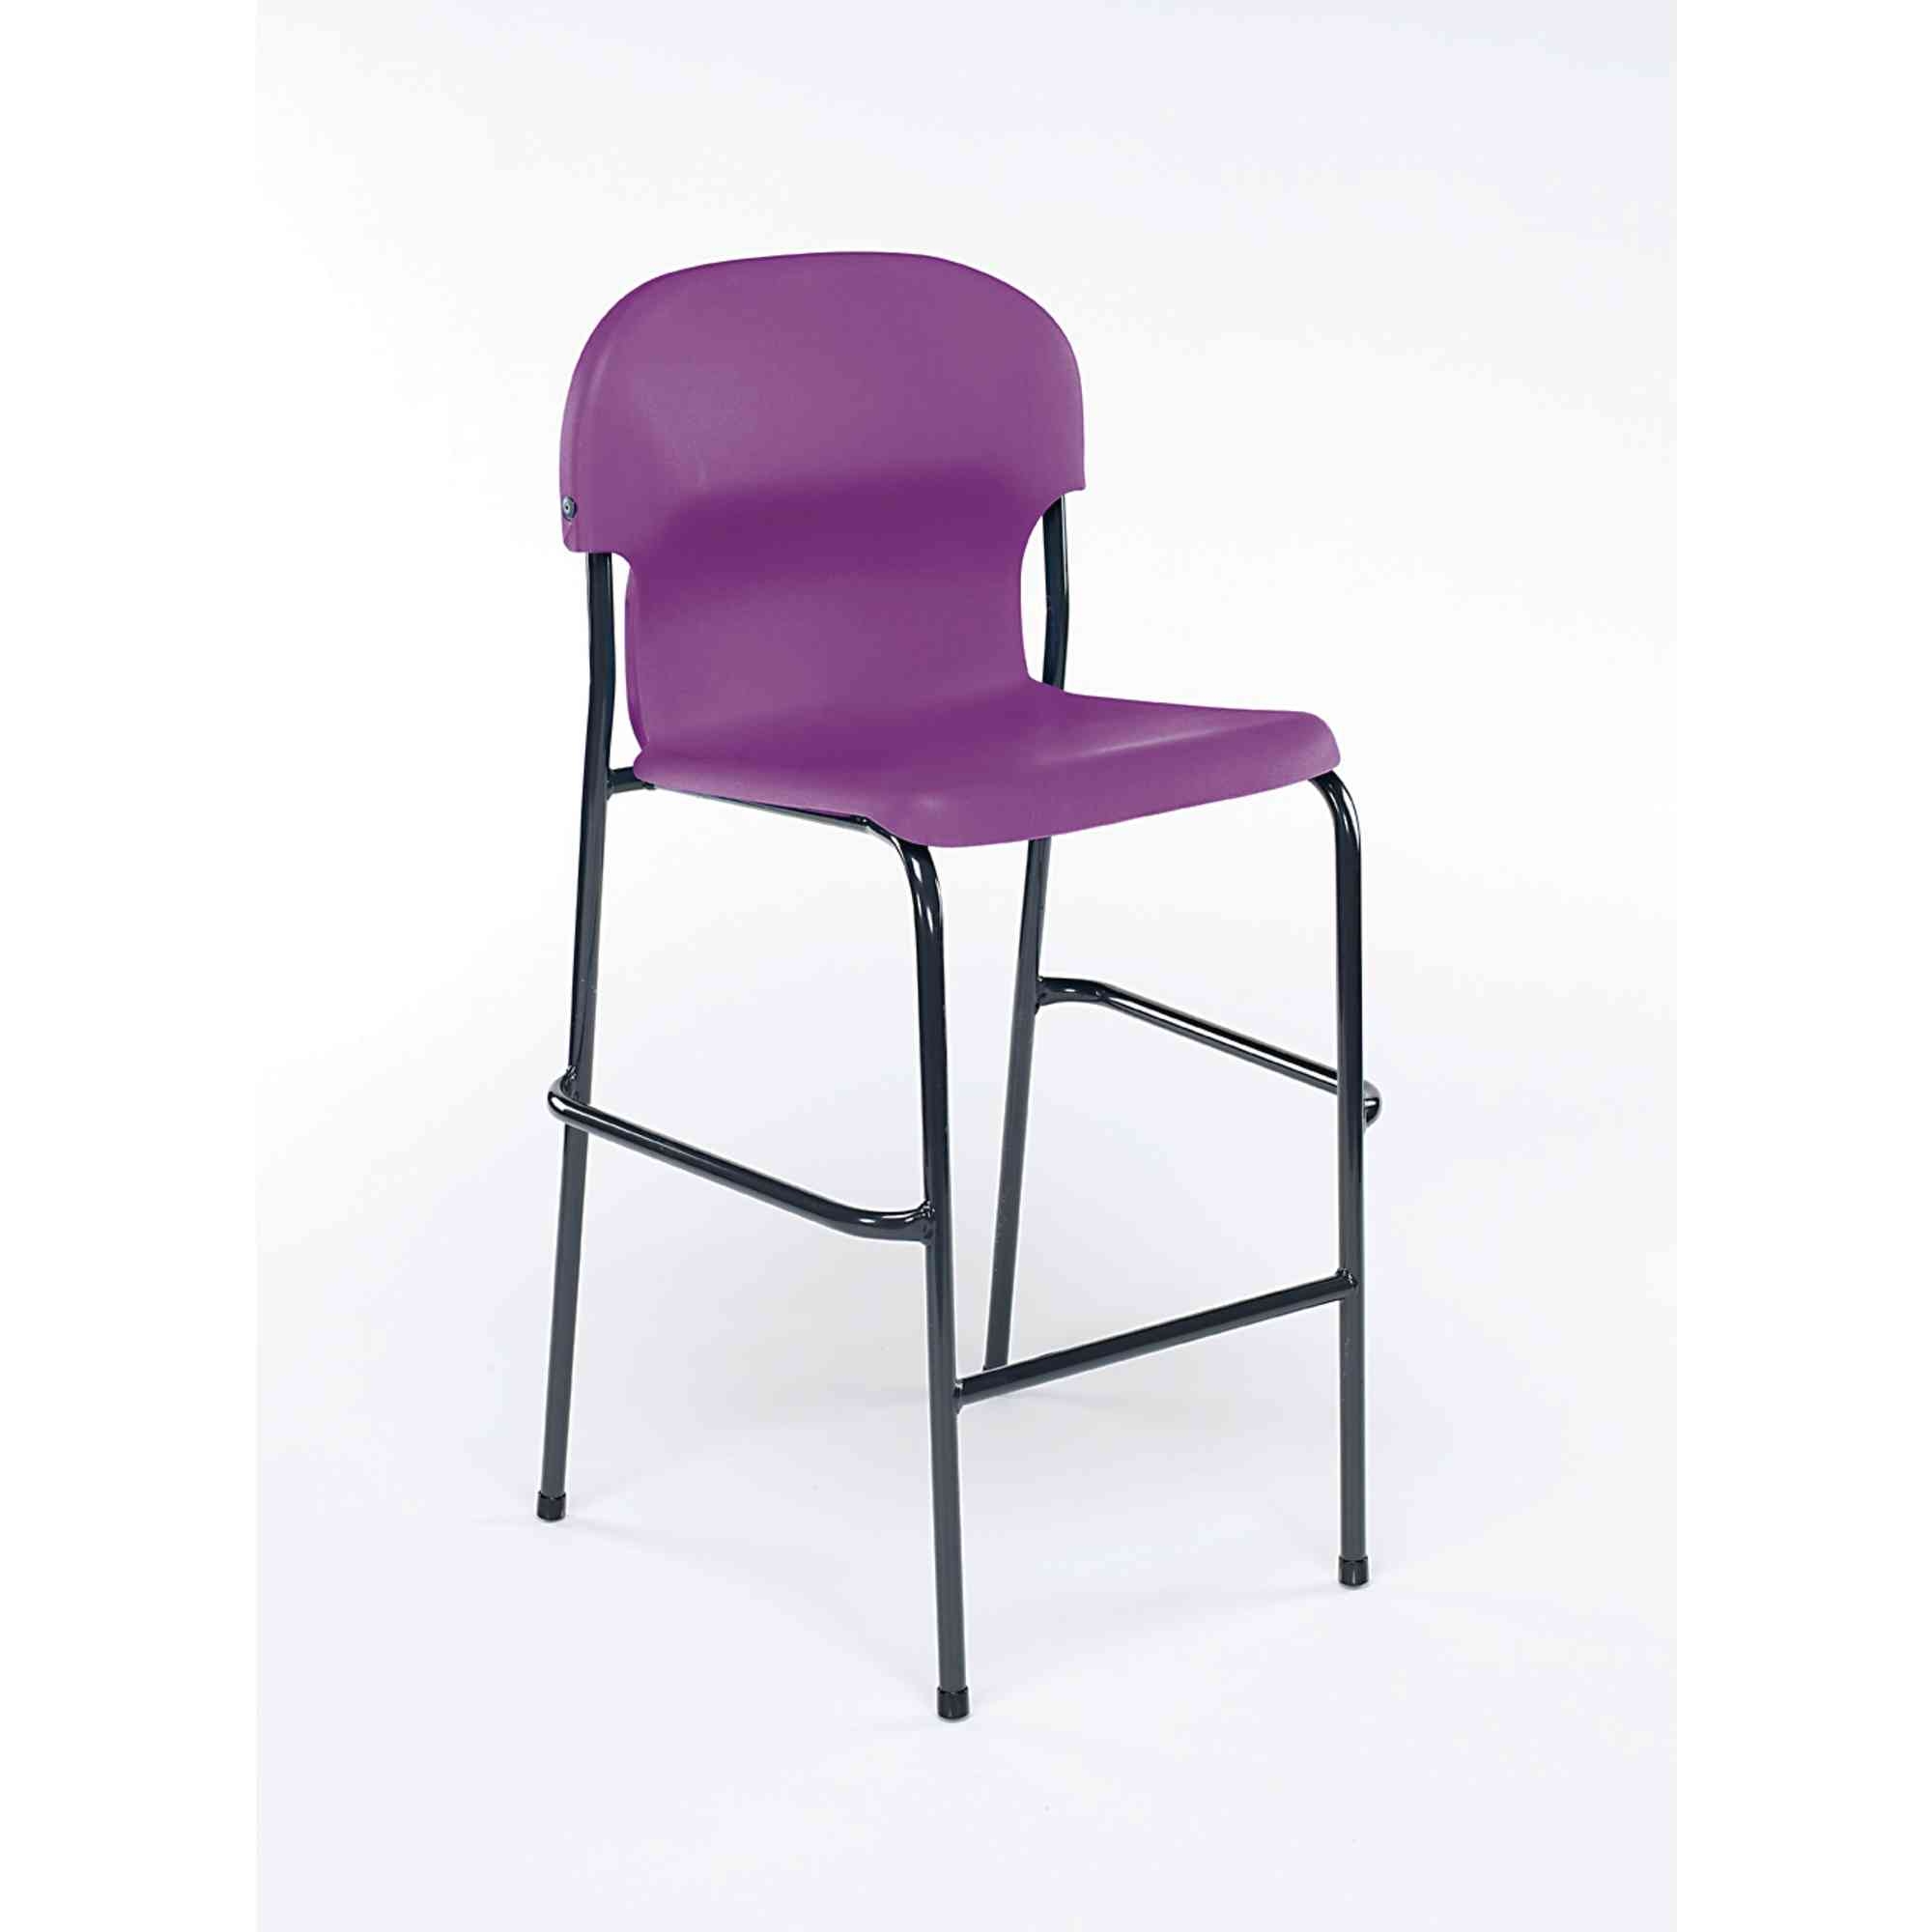 Chair 2000 High Chair - Purple